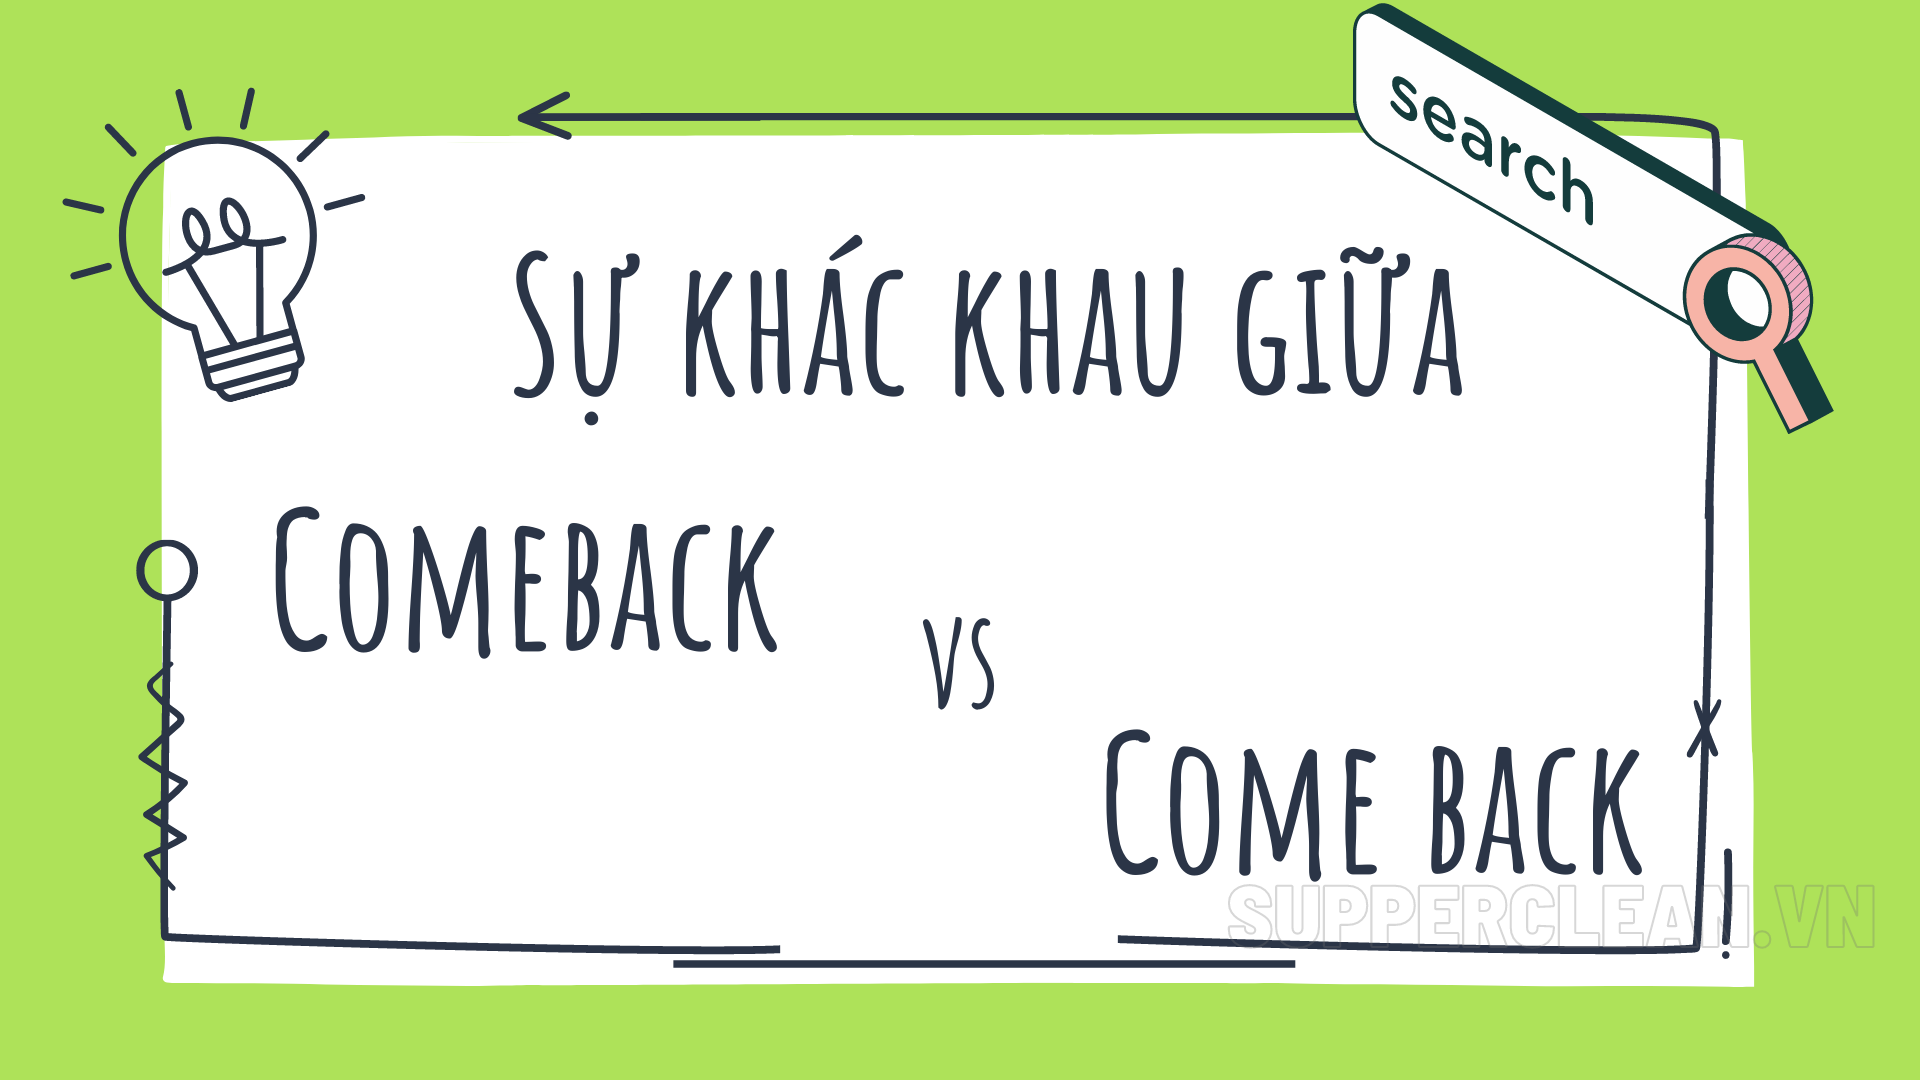 Comeback là gì? Điểm khác biệt giữa comeback và come back